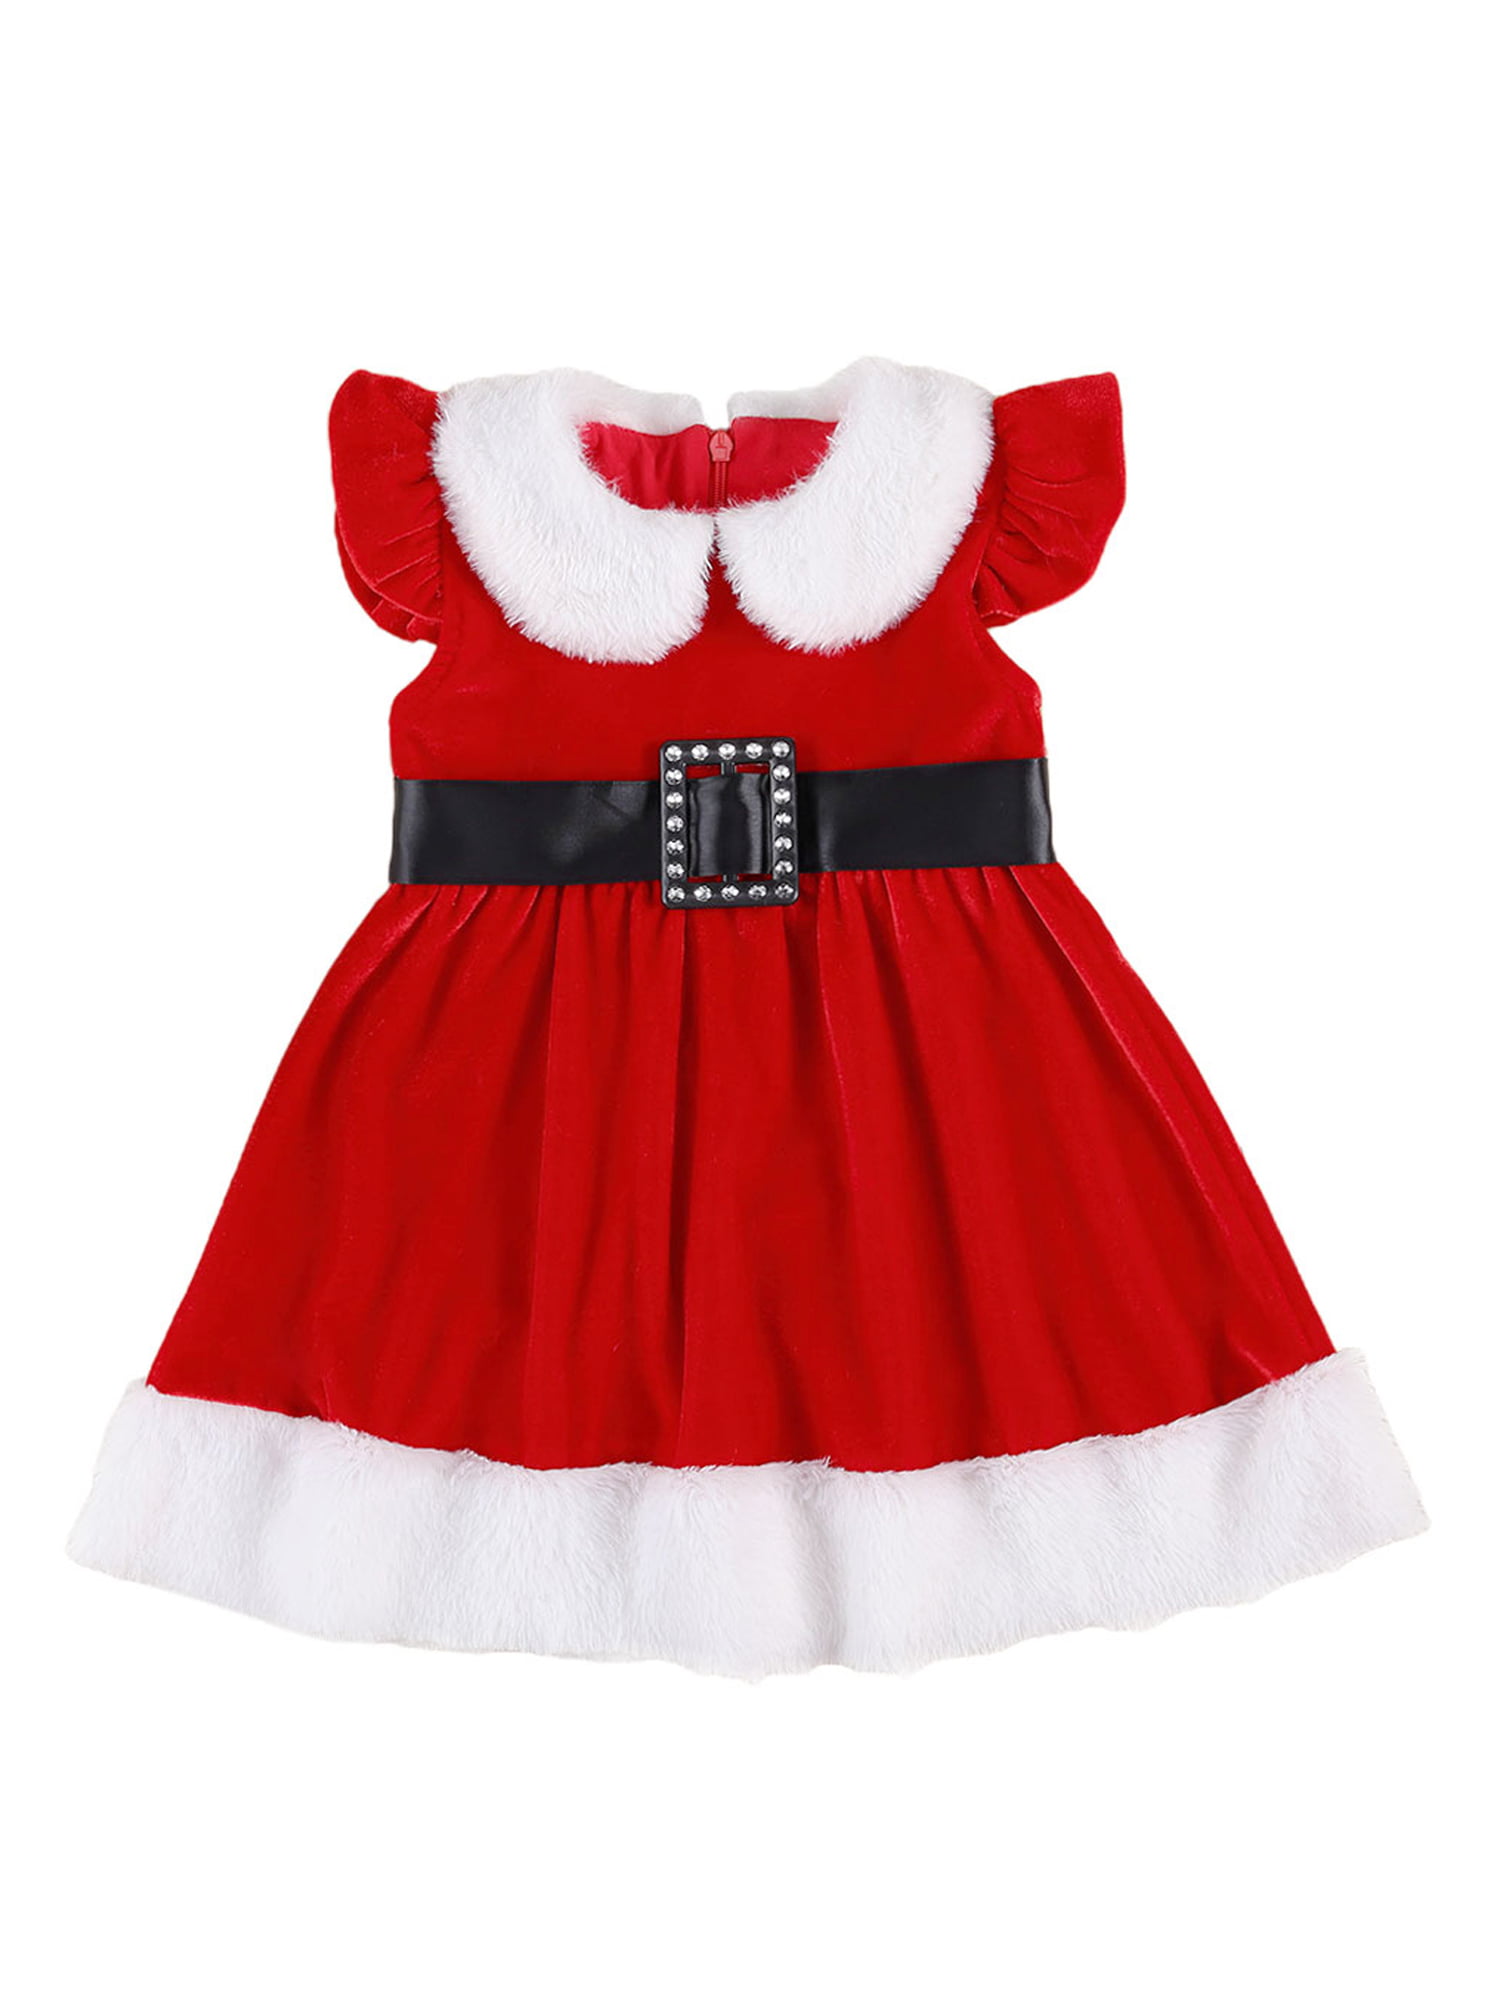 11505 Lil' Santa Claus Costume Infant 6-12 Months Bebe Traje Papai Noel RUBIES 